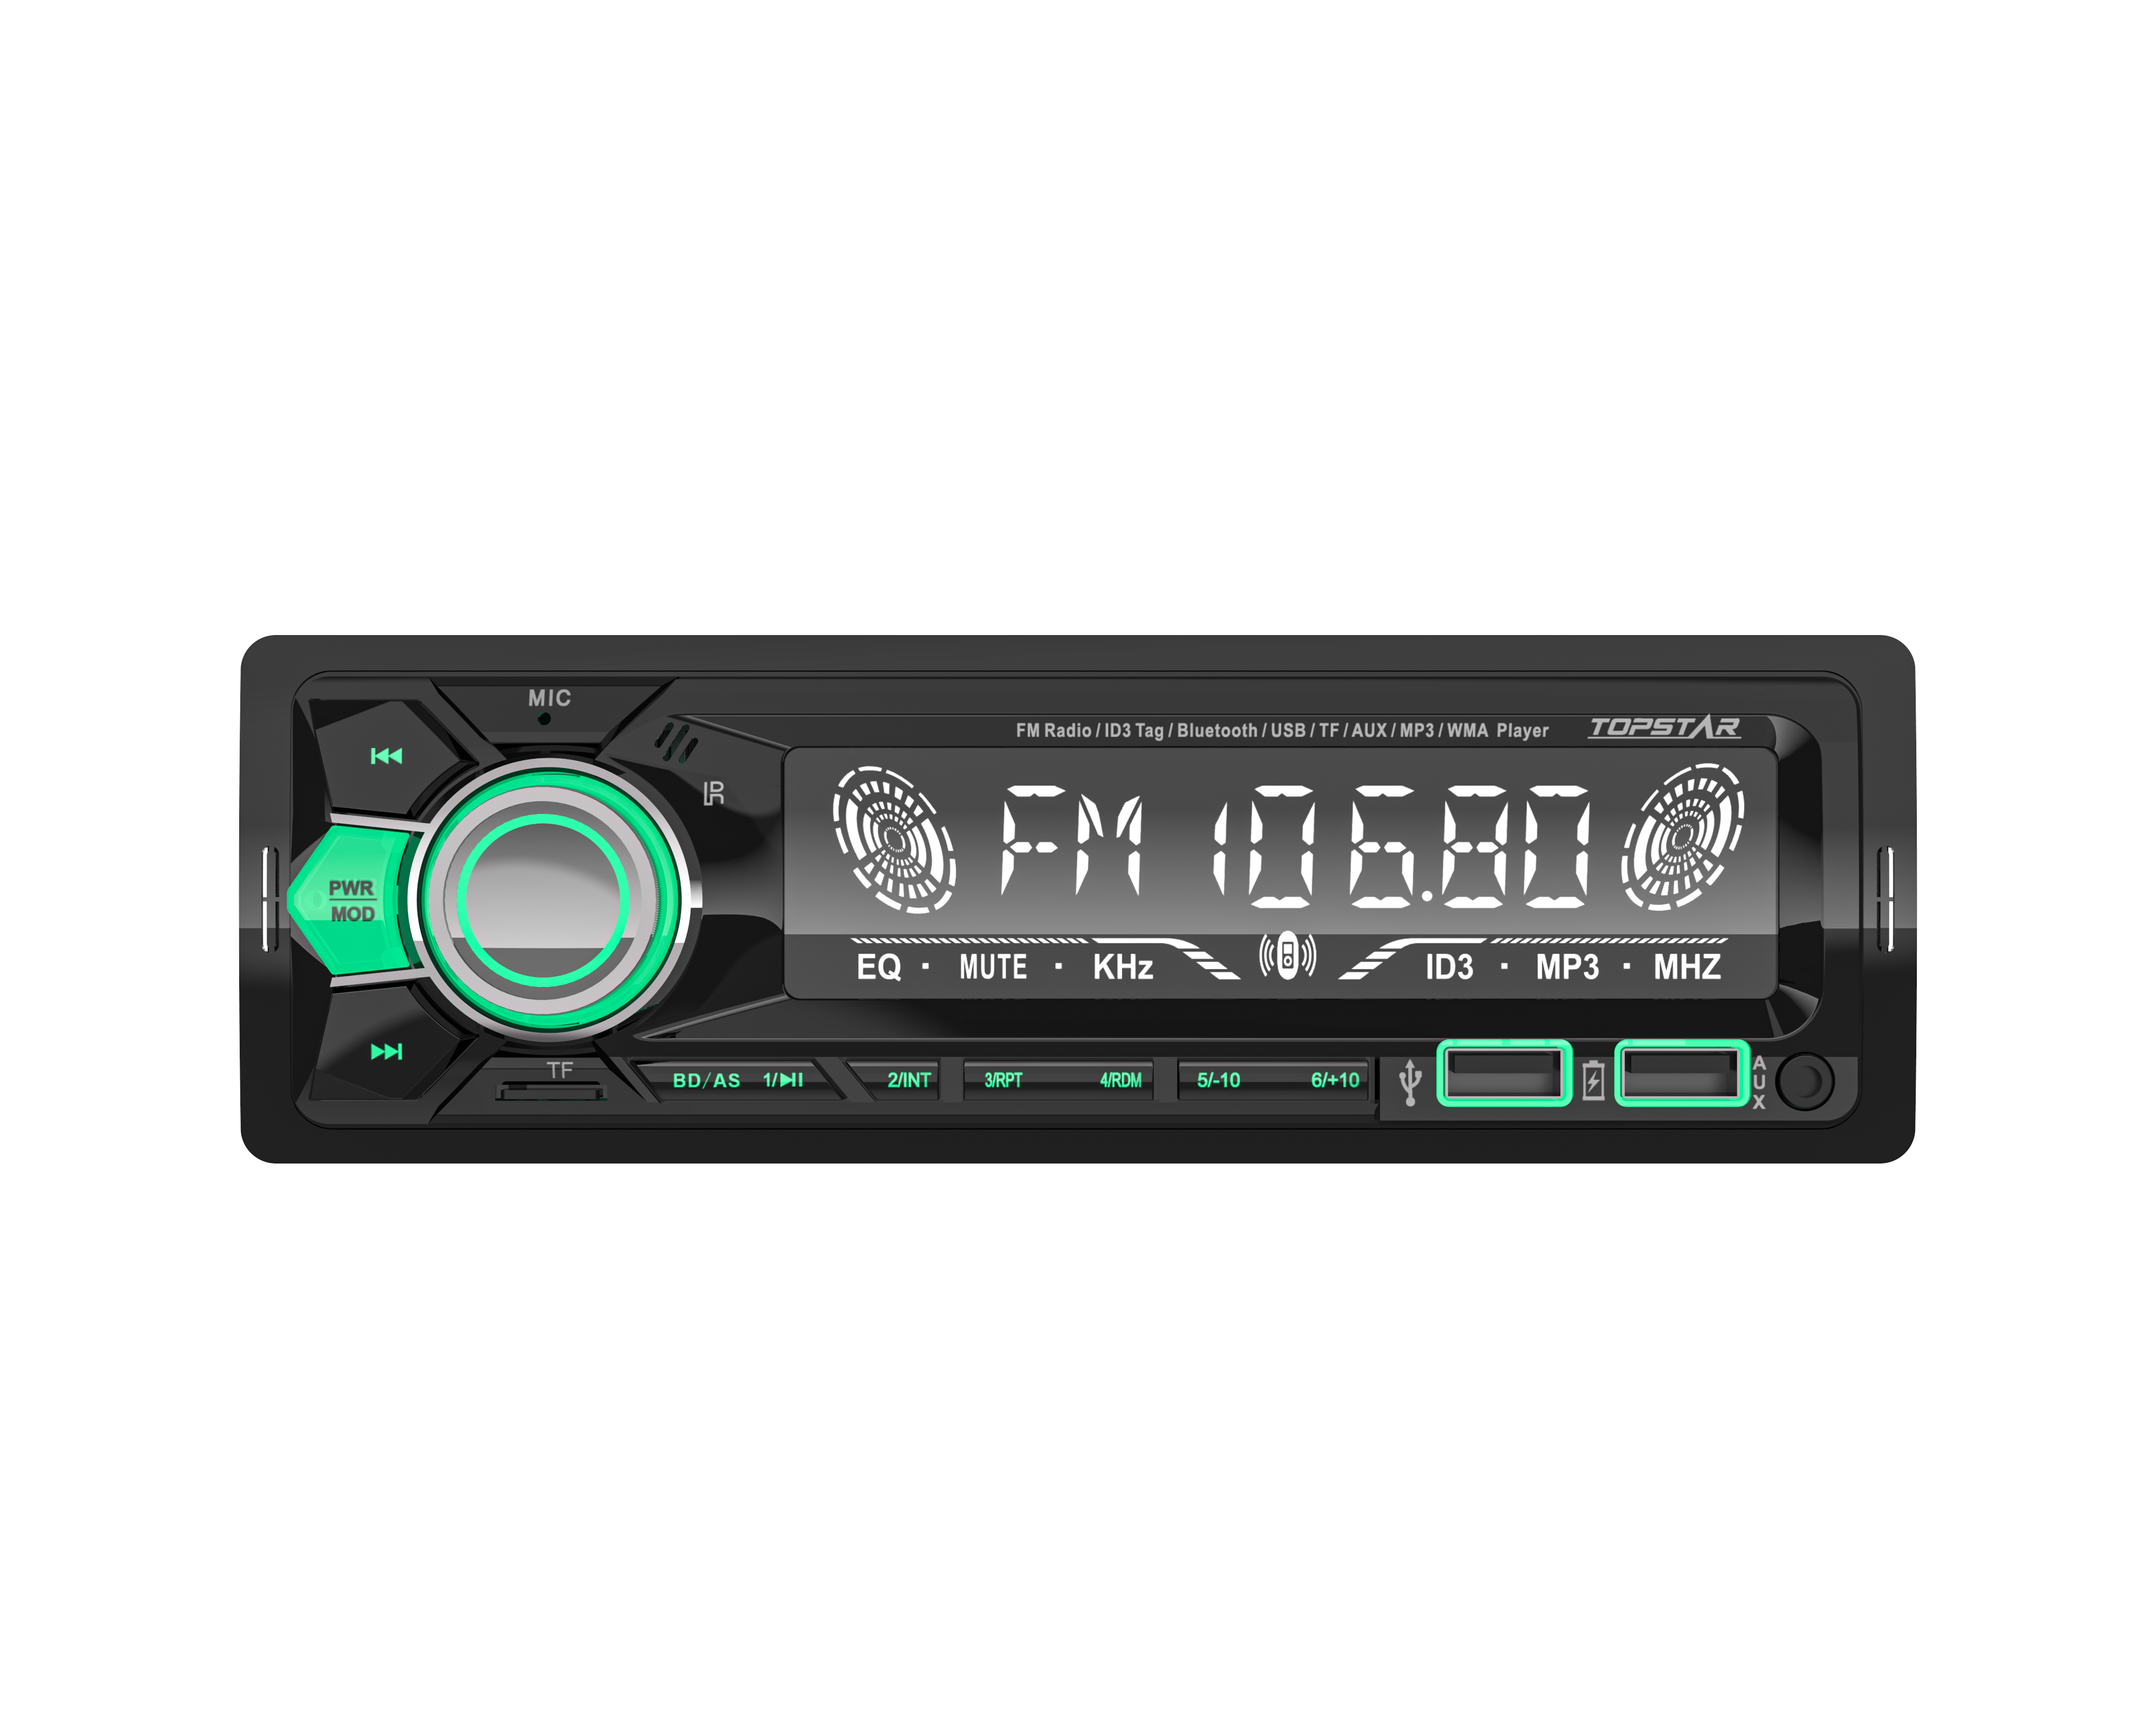 Hochwertiger Auto-MP3-Player mit festem Panel und LCD-Display